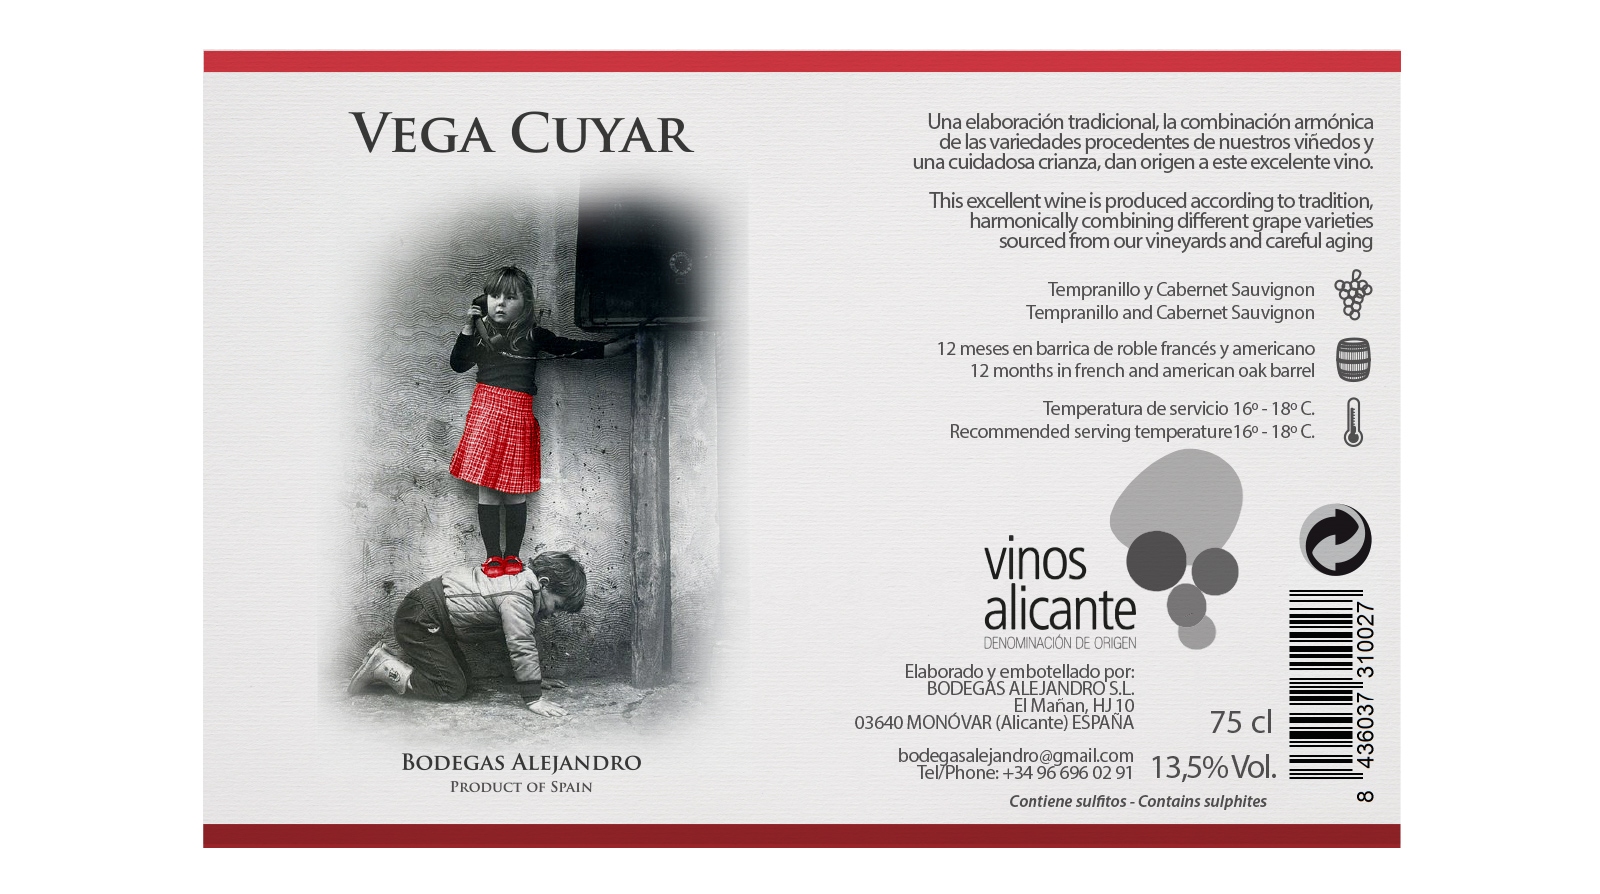 Diseño gráfico y creativo de etiquetas y packaging de vino para VEGA CUYAR II